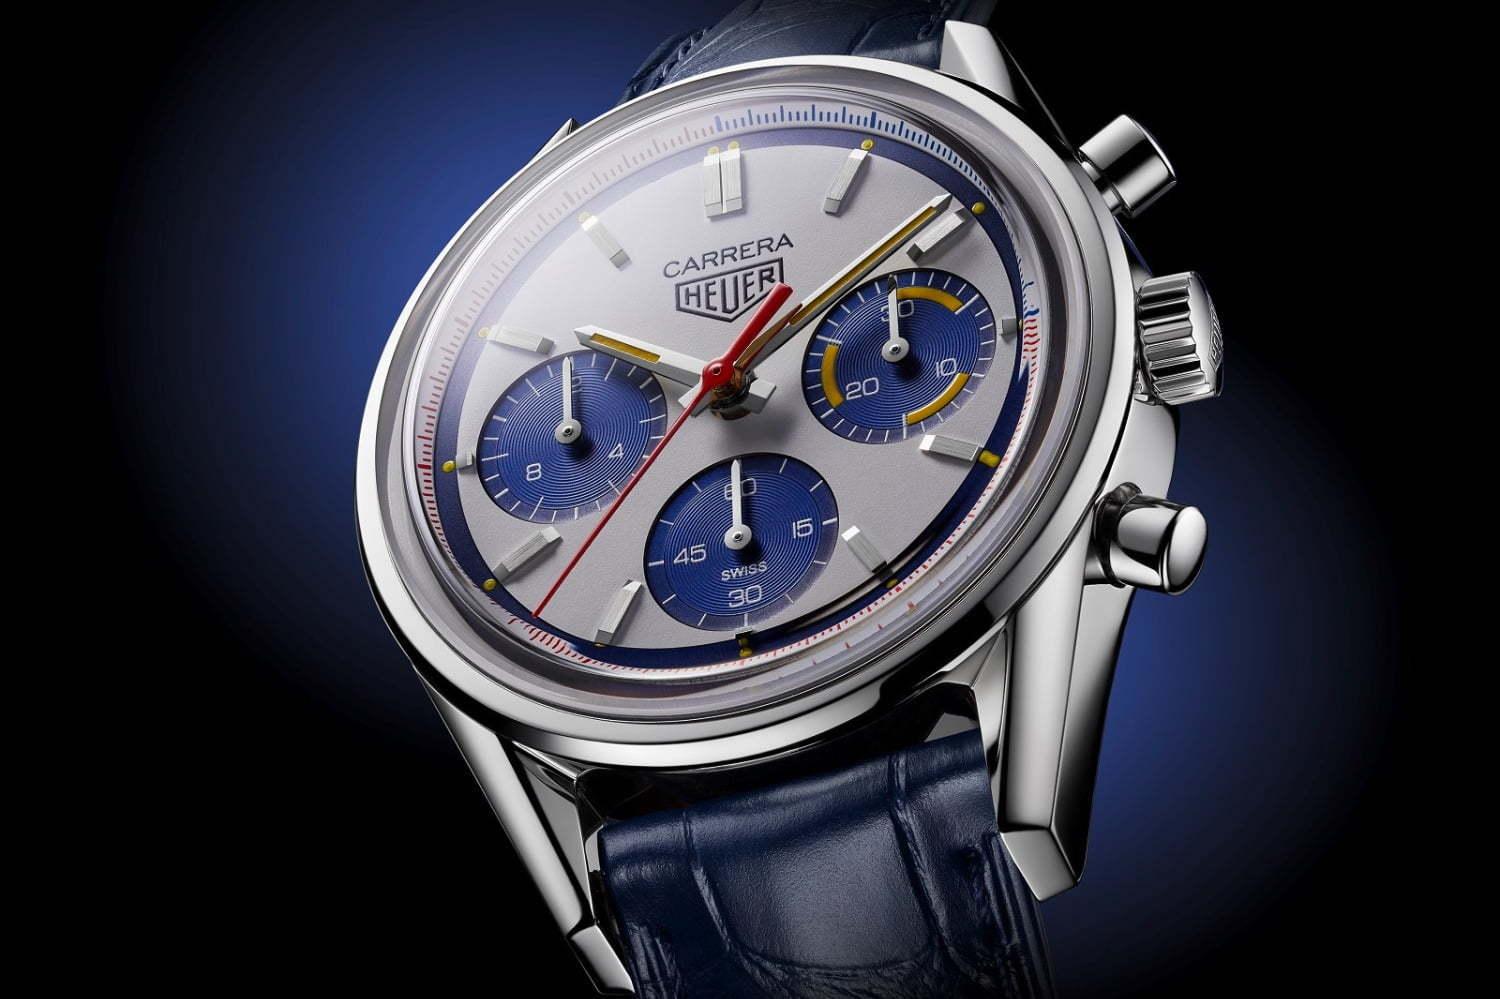 タグ・ホイヤーの腕時計「カレラ」ホワイト モントリオールなど人気モデルを復刻、160周年記念で 